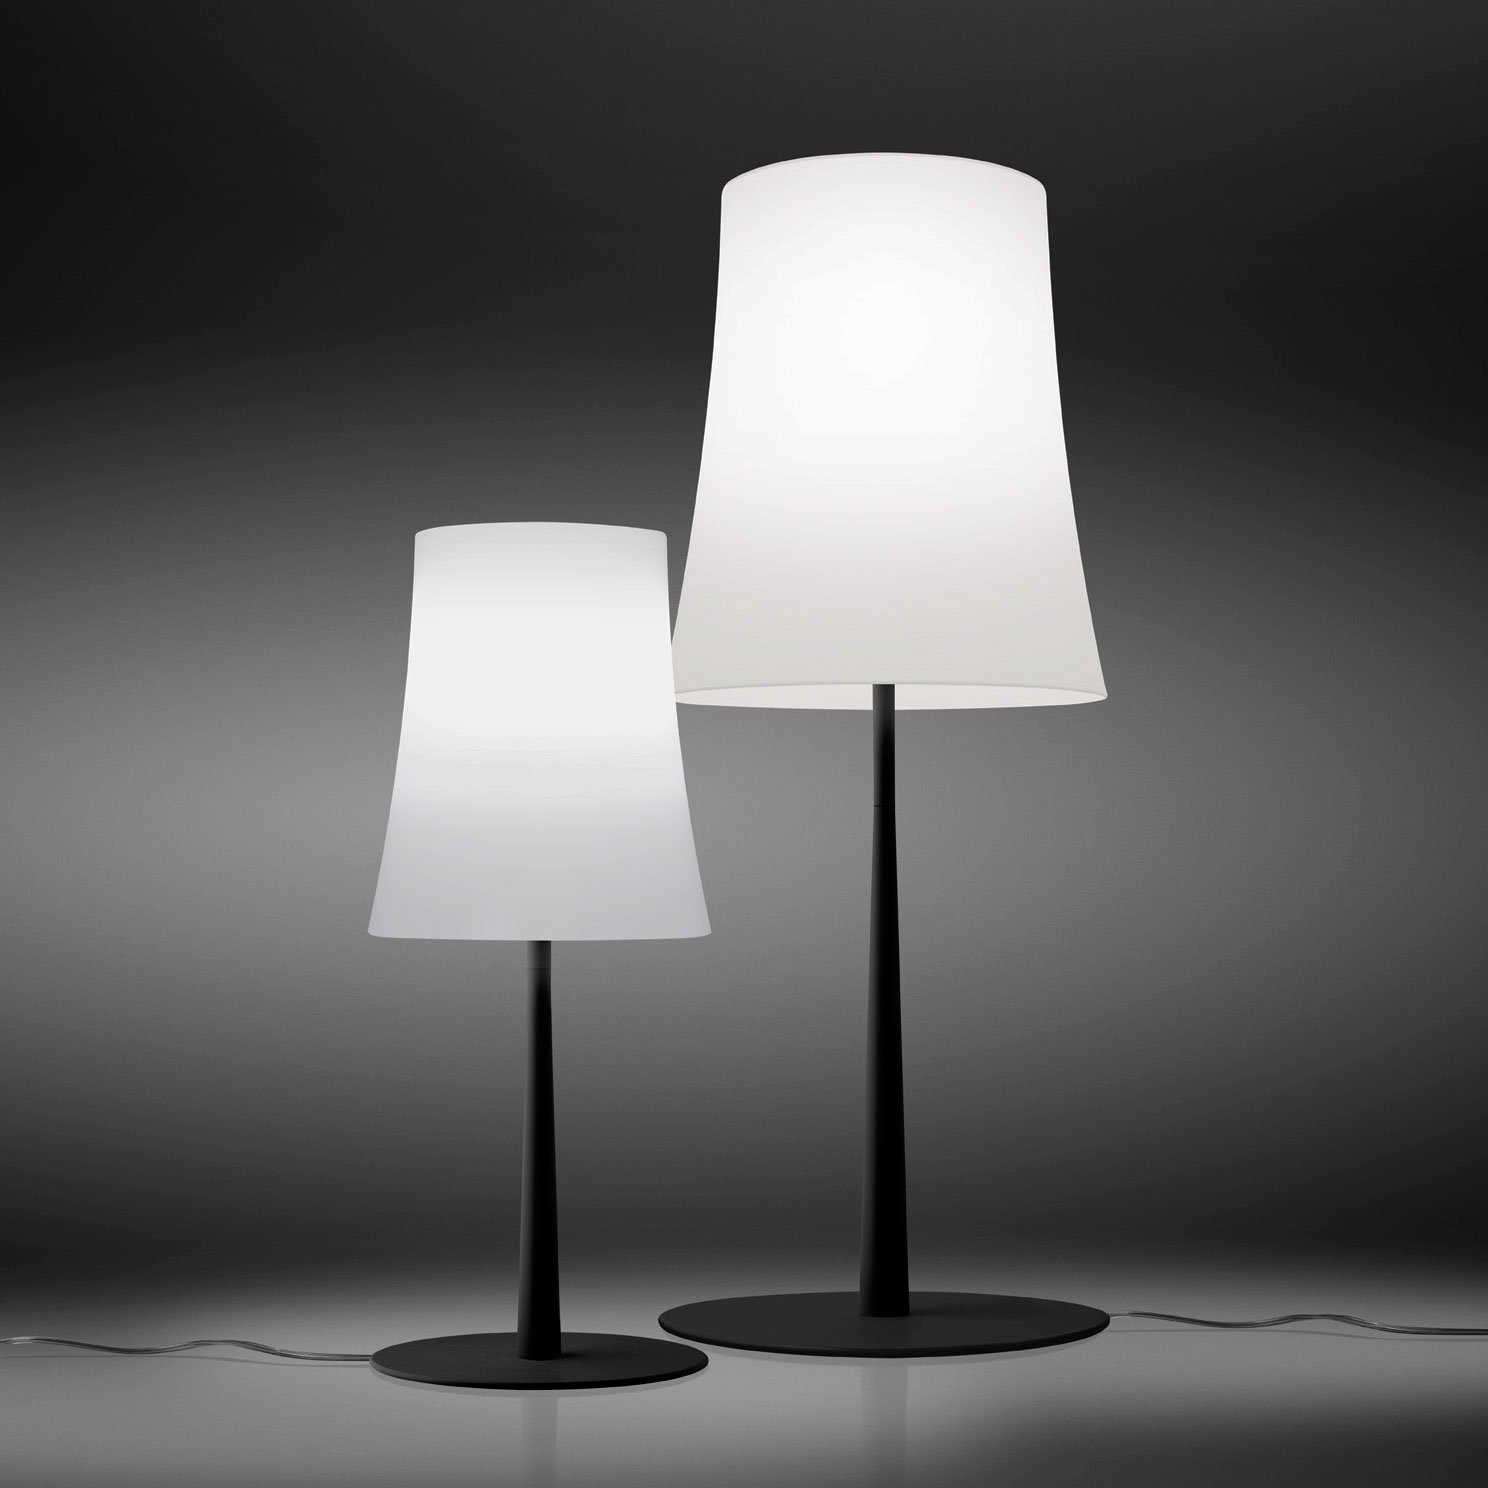 lampara de mesa birdie easy foscarini diseño italiano iluminacion dormitorio escritorio